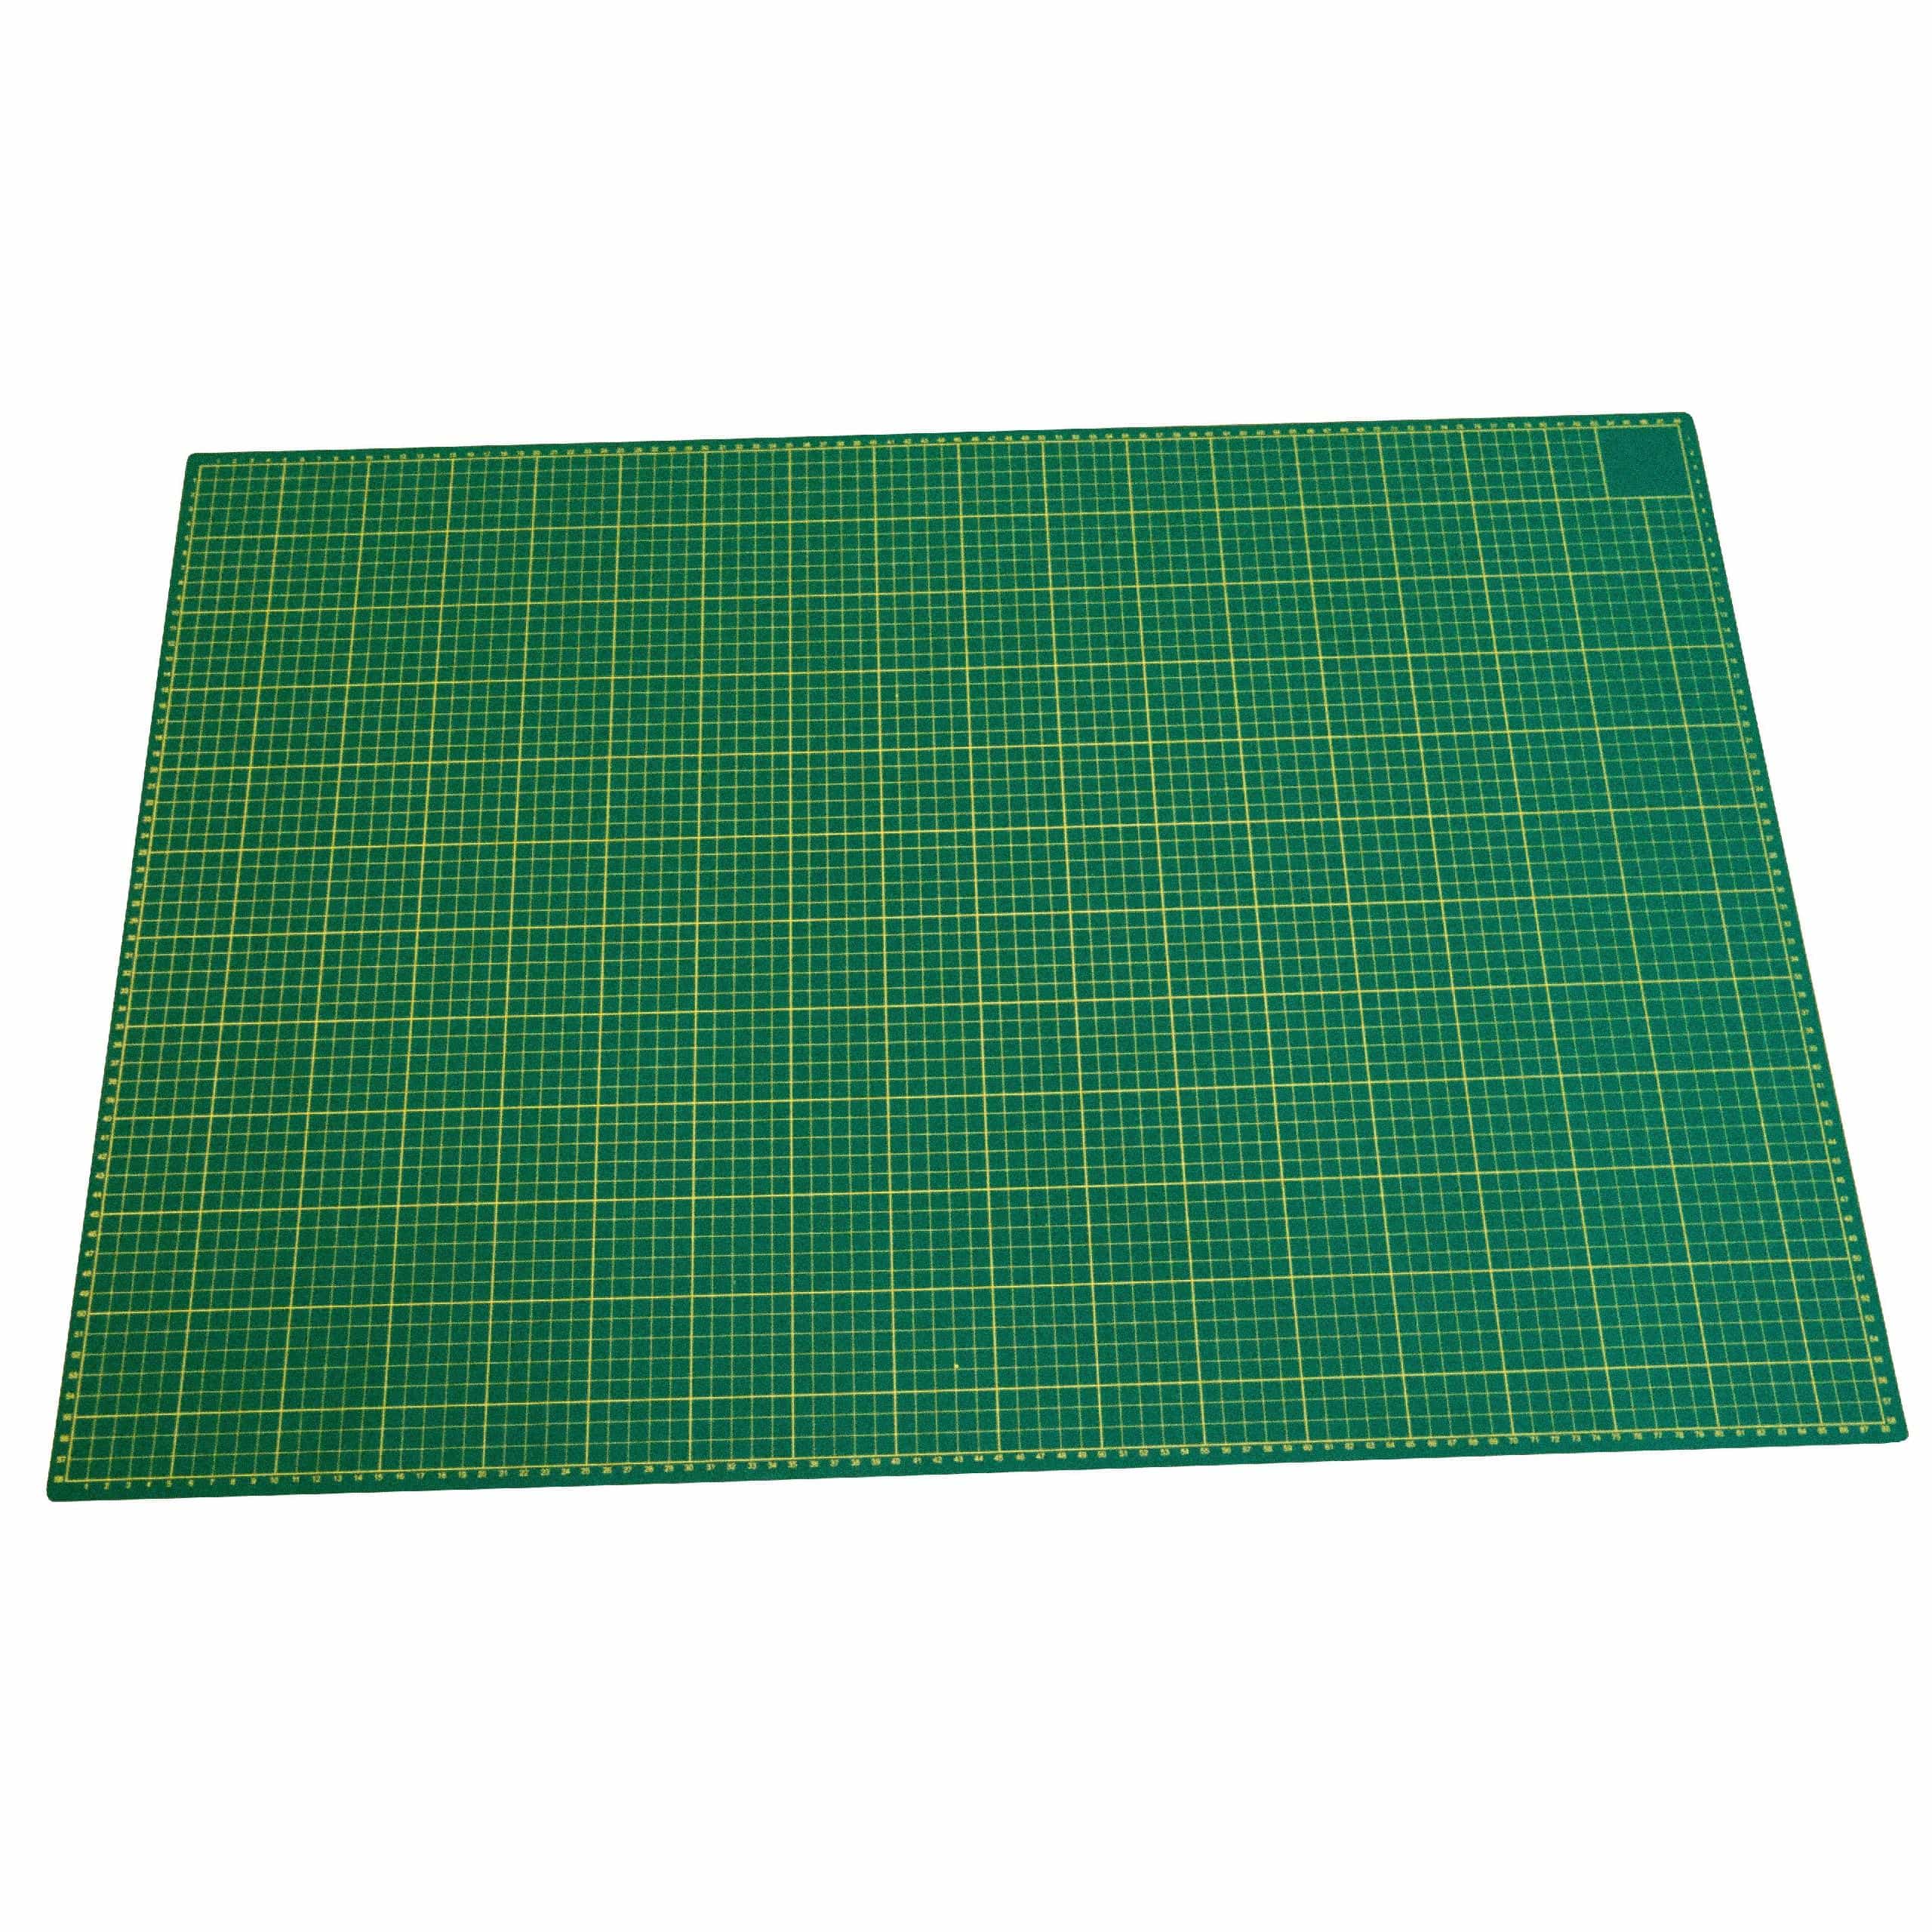 Base de corte - A1 superficie de trabajo, 90 x 60 cm, autoreparable, con cuadrícula, doble cara